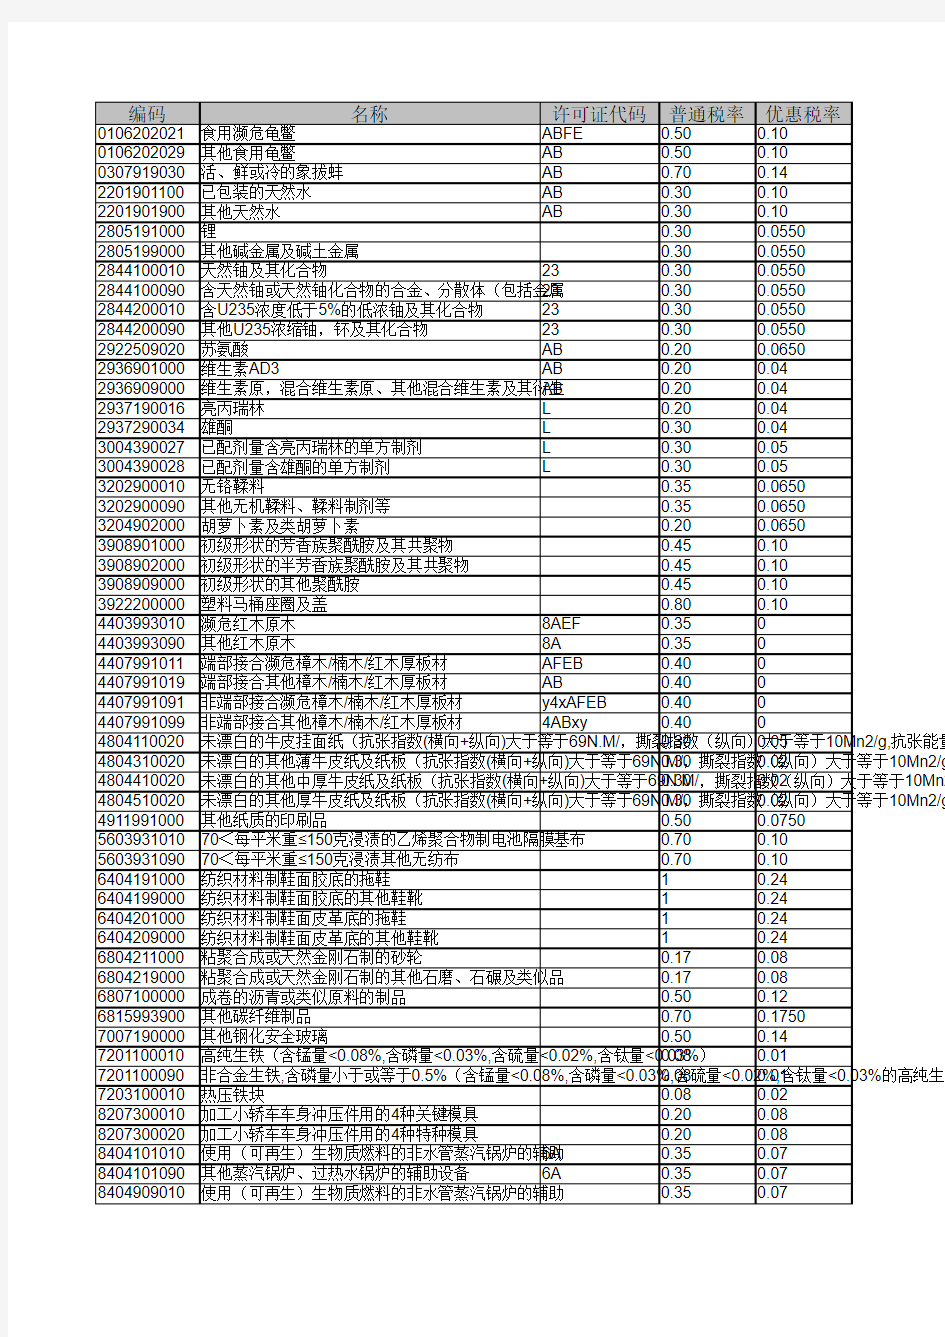 2016年海关商品编码对照表